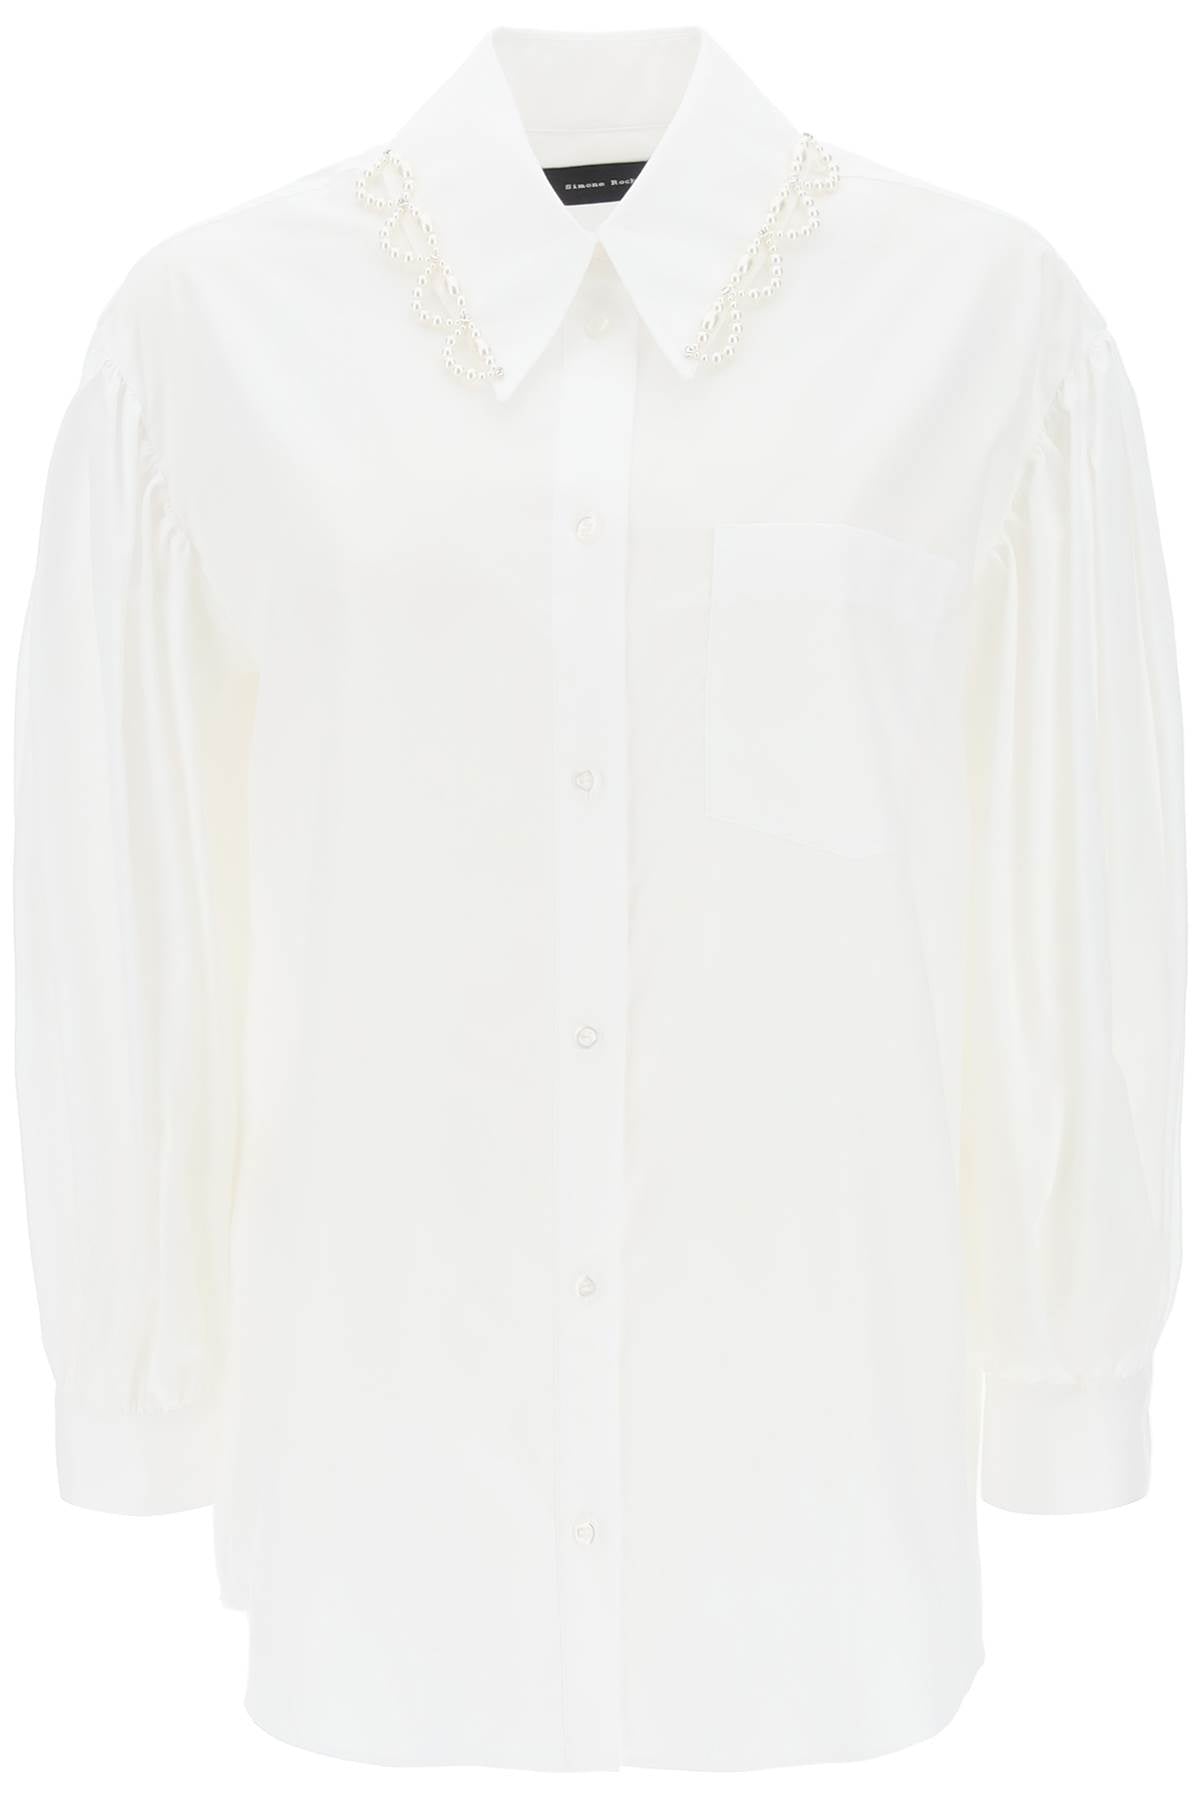 经典白色衬衫，优雅泡泡袖，饰以珍珠和水晶装饰